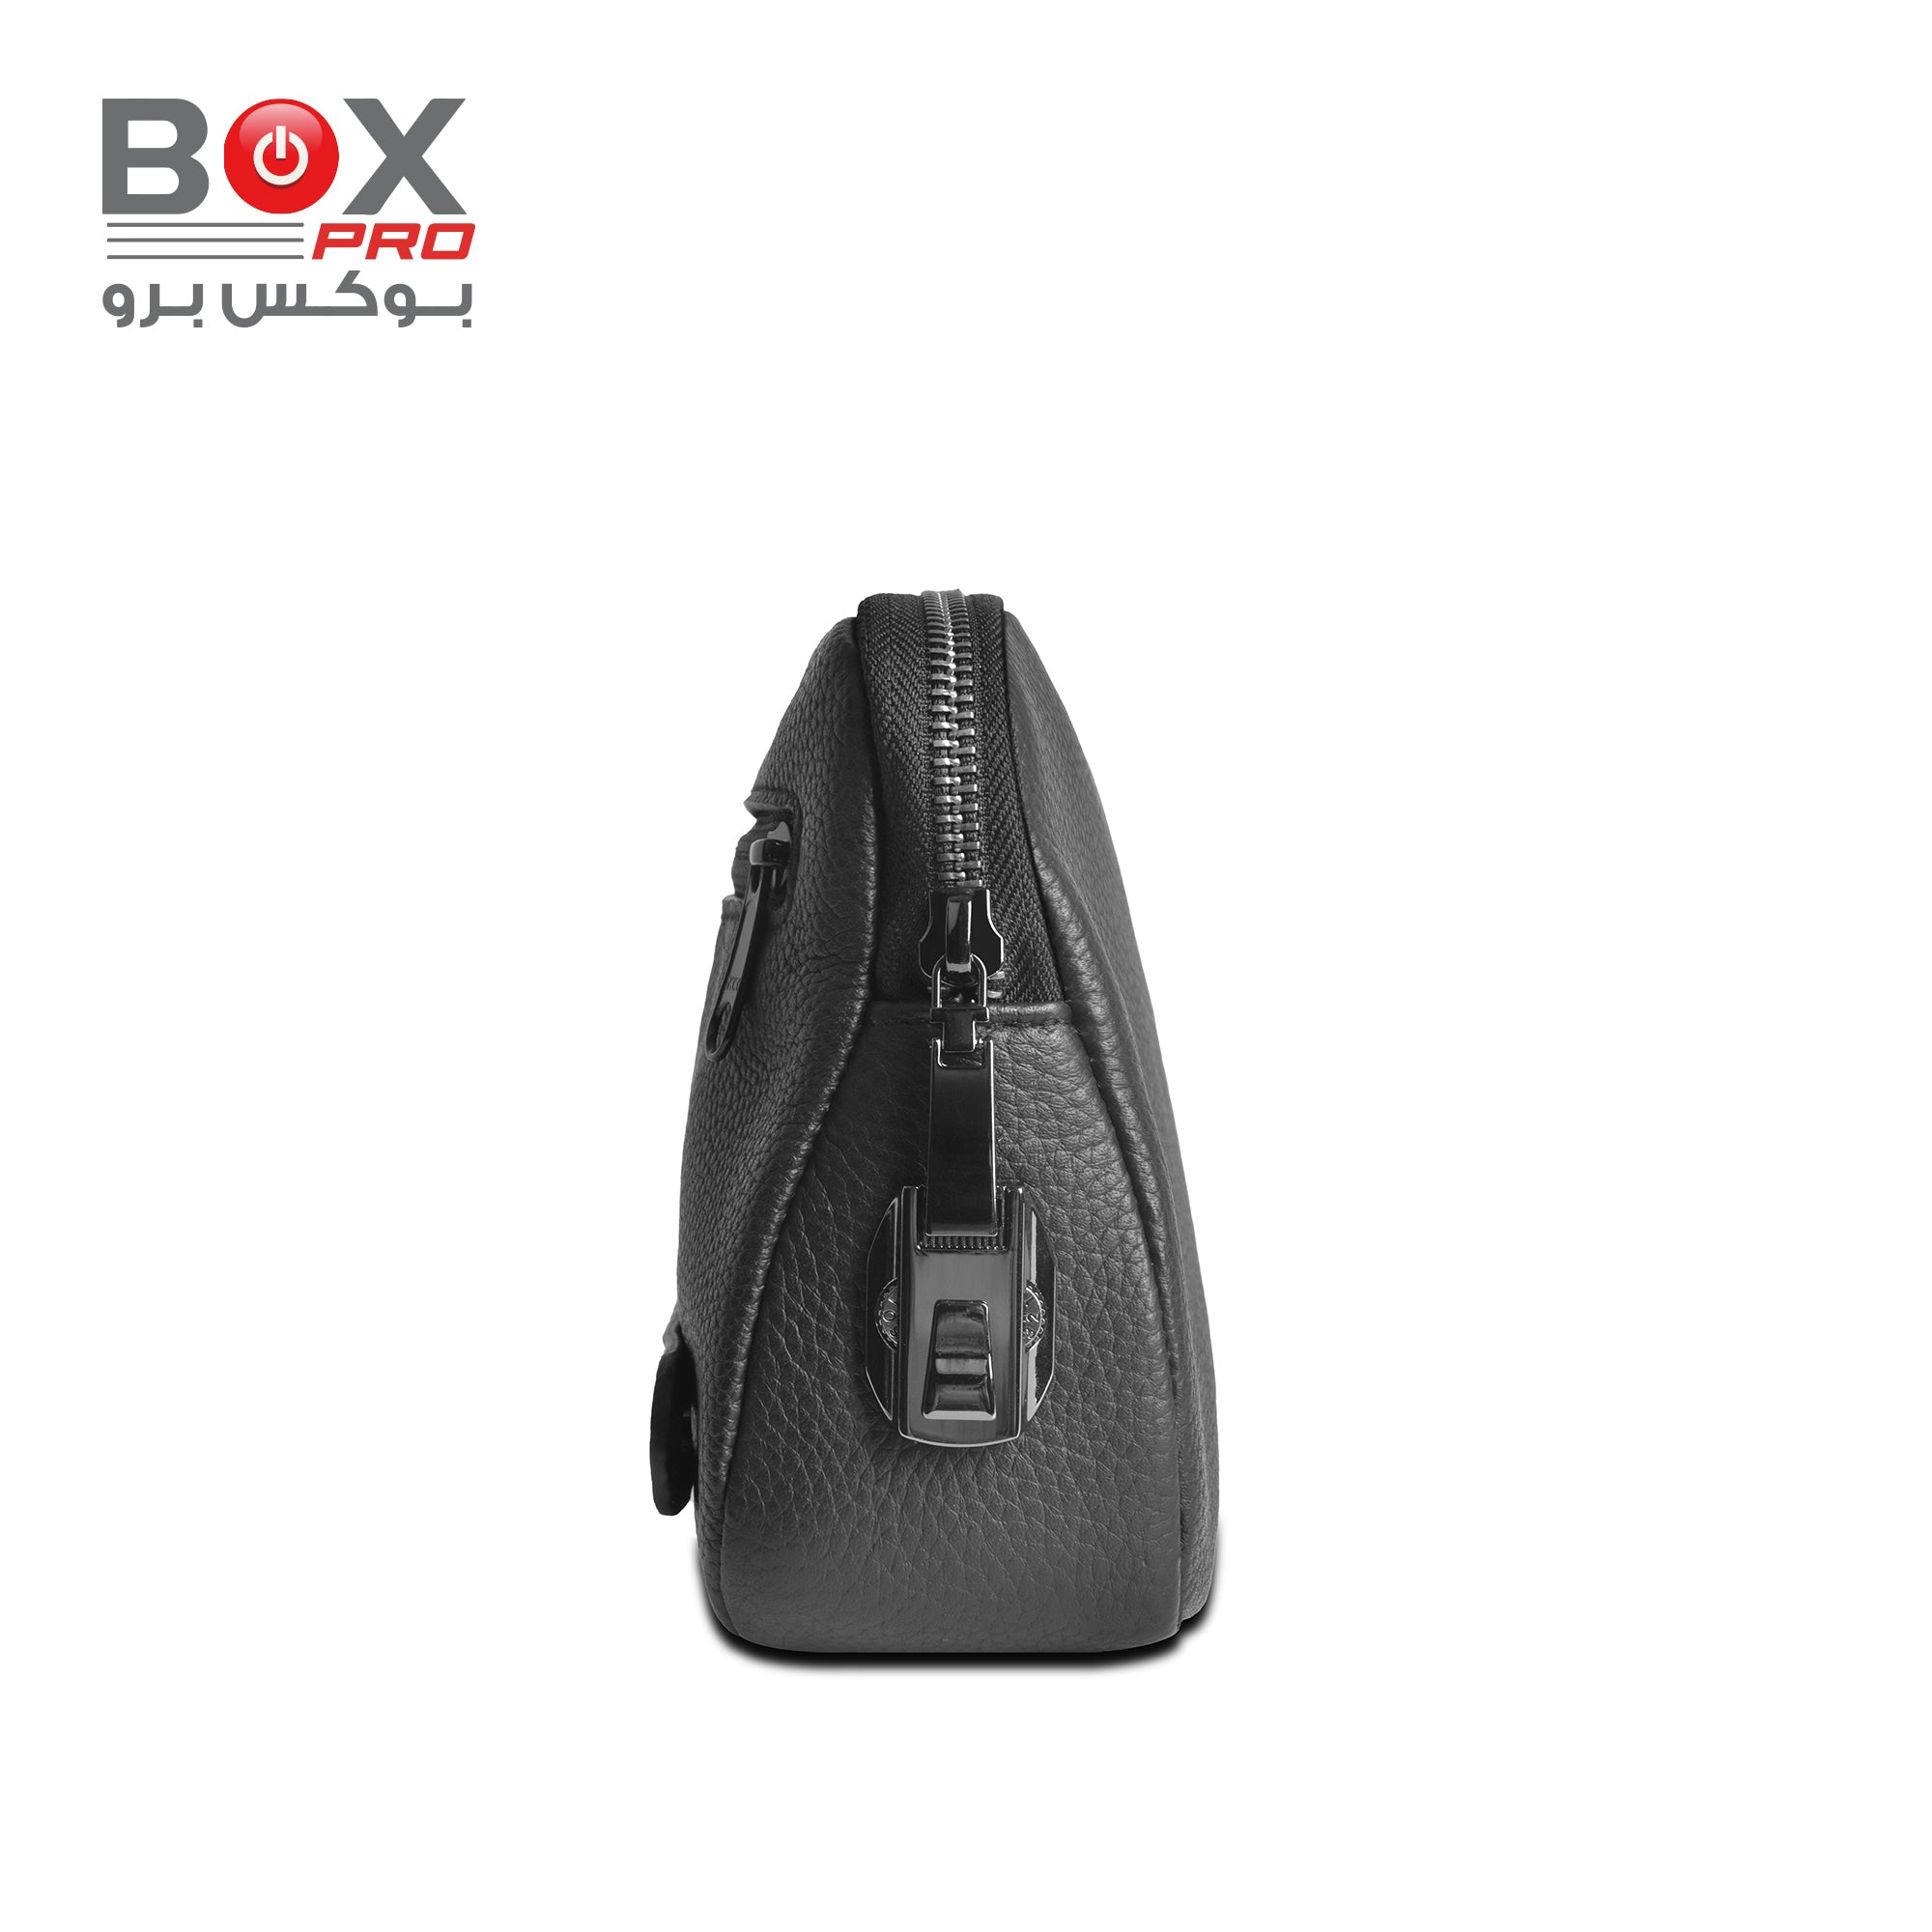 حقيبة كلاتش BoxPro Alpha المضادة للسرقة للسفر بأناقة - أسود